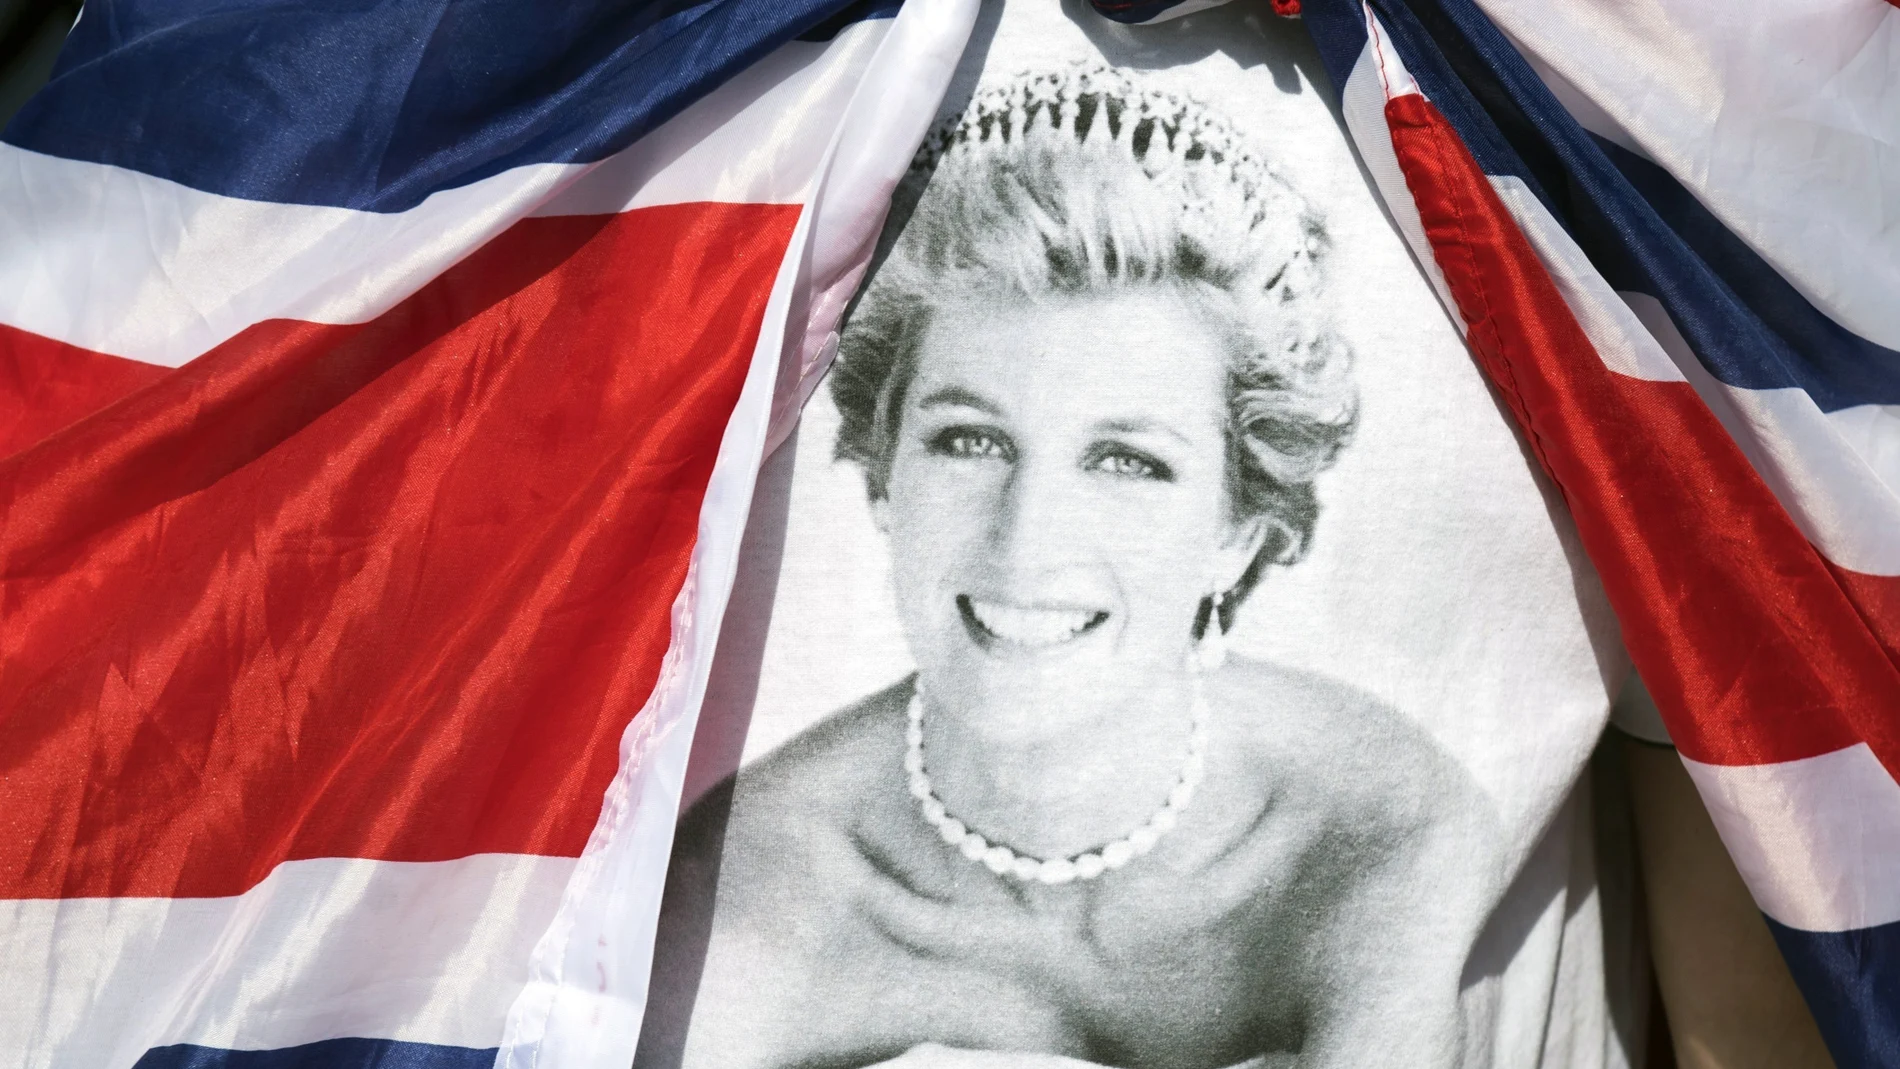 Tributos en memoria de la princesa Diana de Gales a las puertas del Palacio de Kensington en Londres (Reino Unido), 31 de agosto de 2017, cuando se cumplen 20 años desde la muerte de la princesa Diana de Gales, fallecida tras un accidente de tráfico en París en 1997.